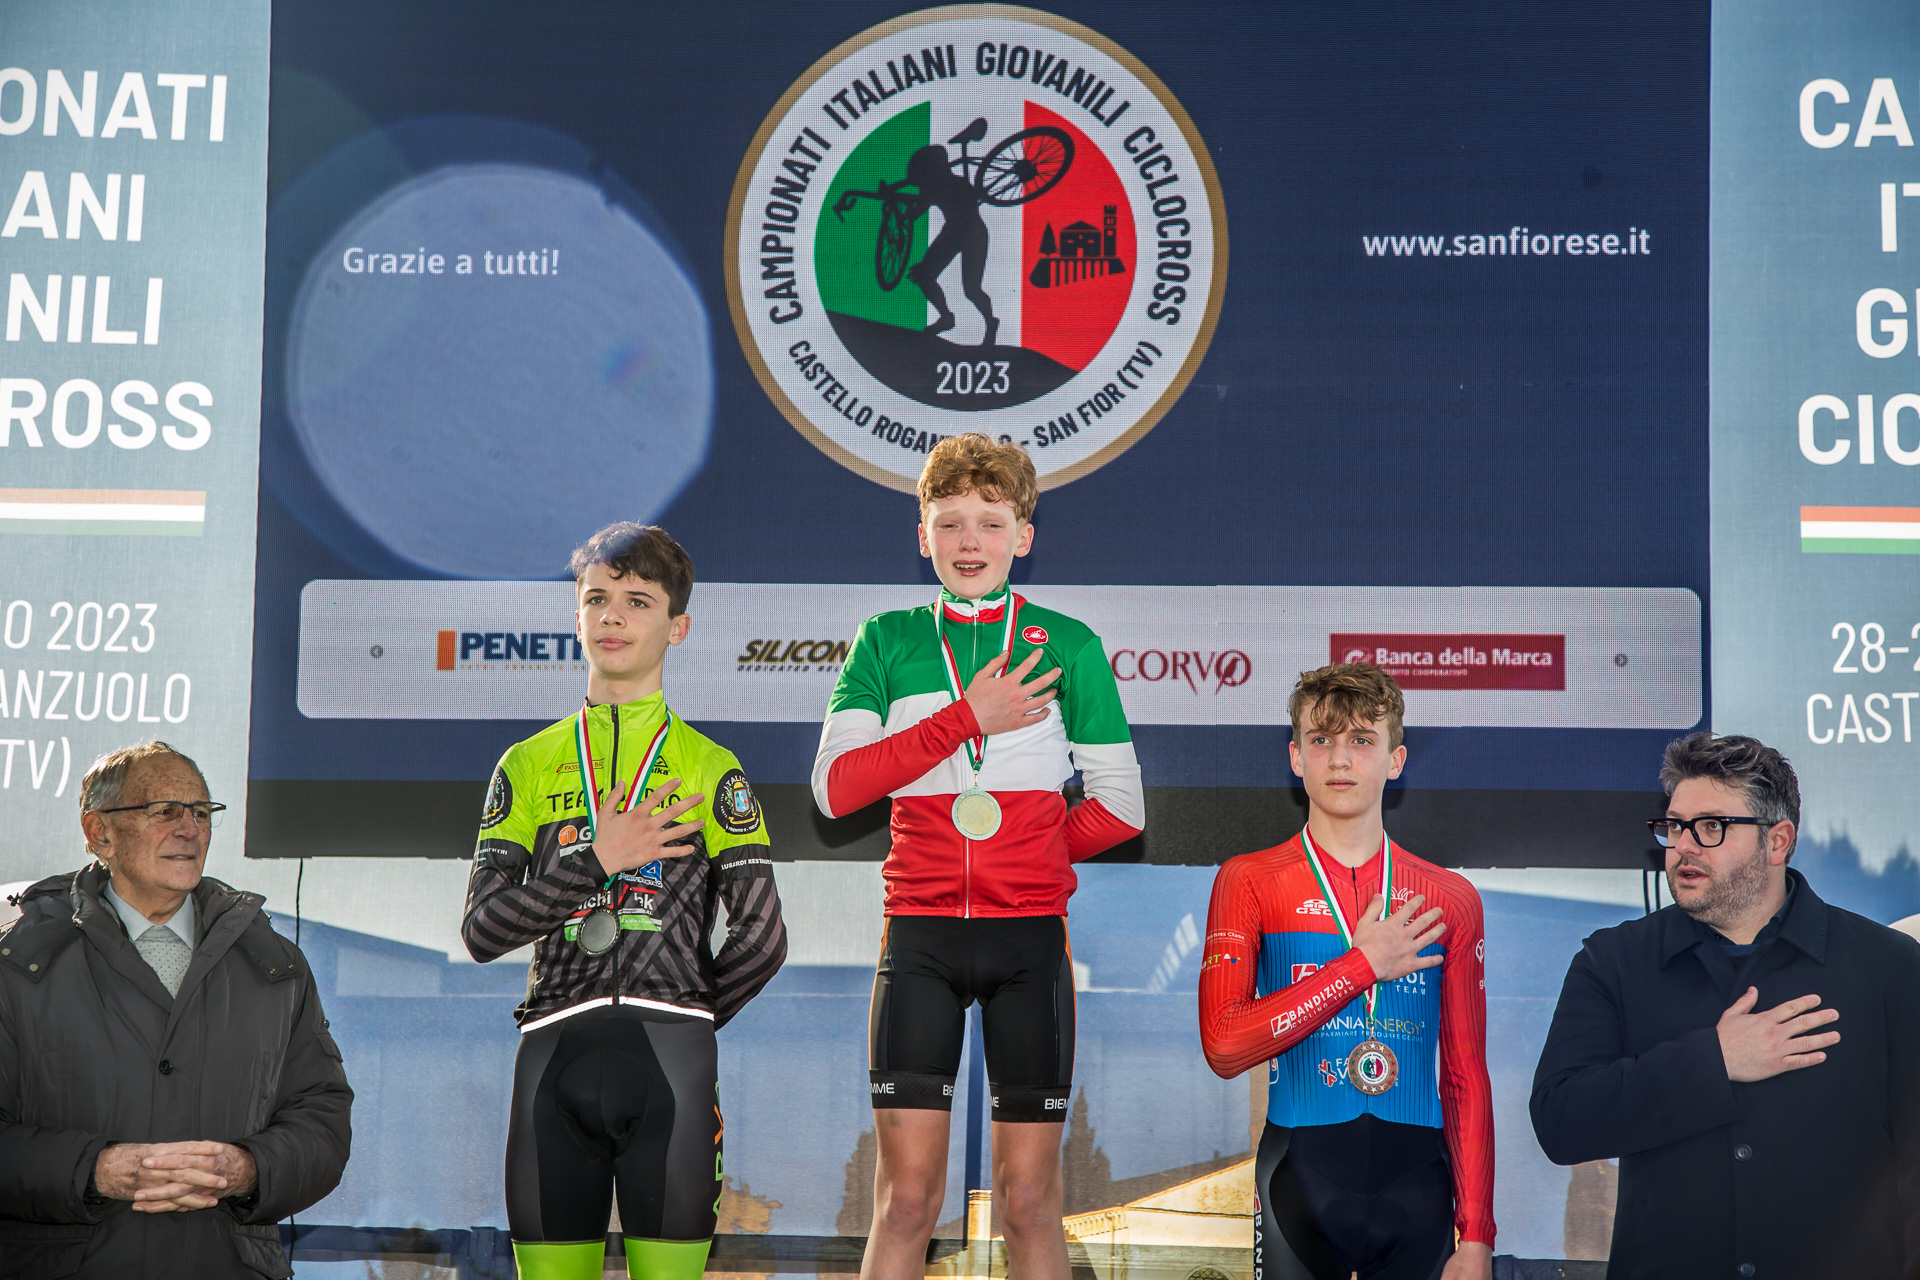 29\01\2023 – Campionati Italiani Giovanili Ciclocross 2023 (Esordienti 1)